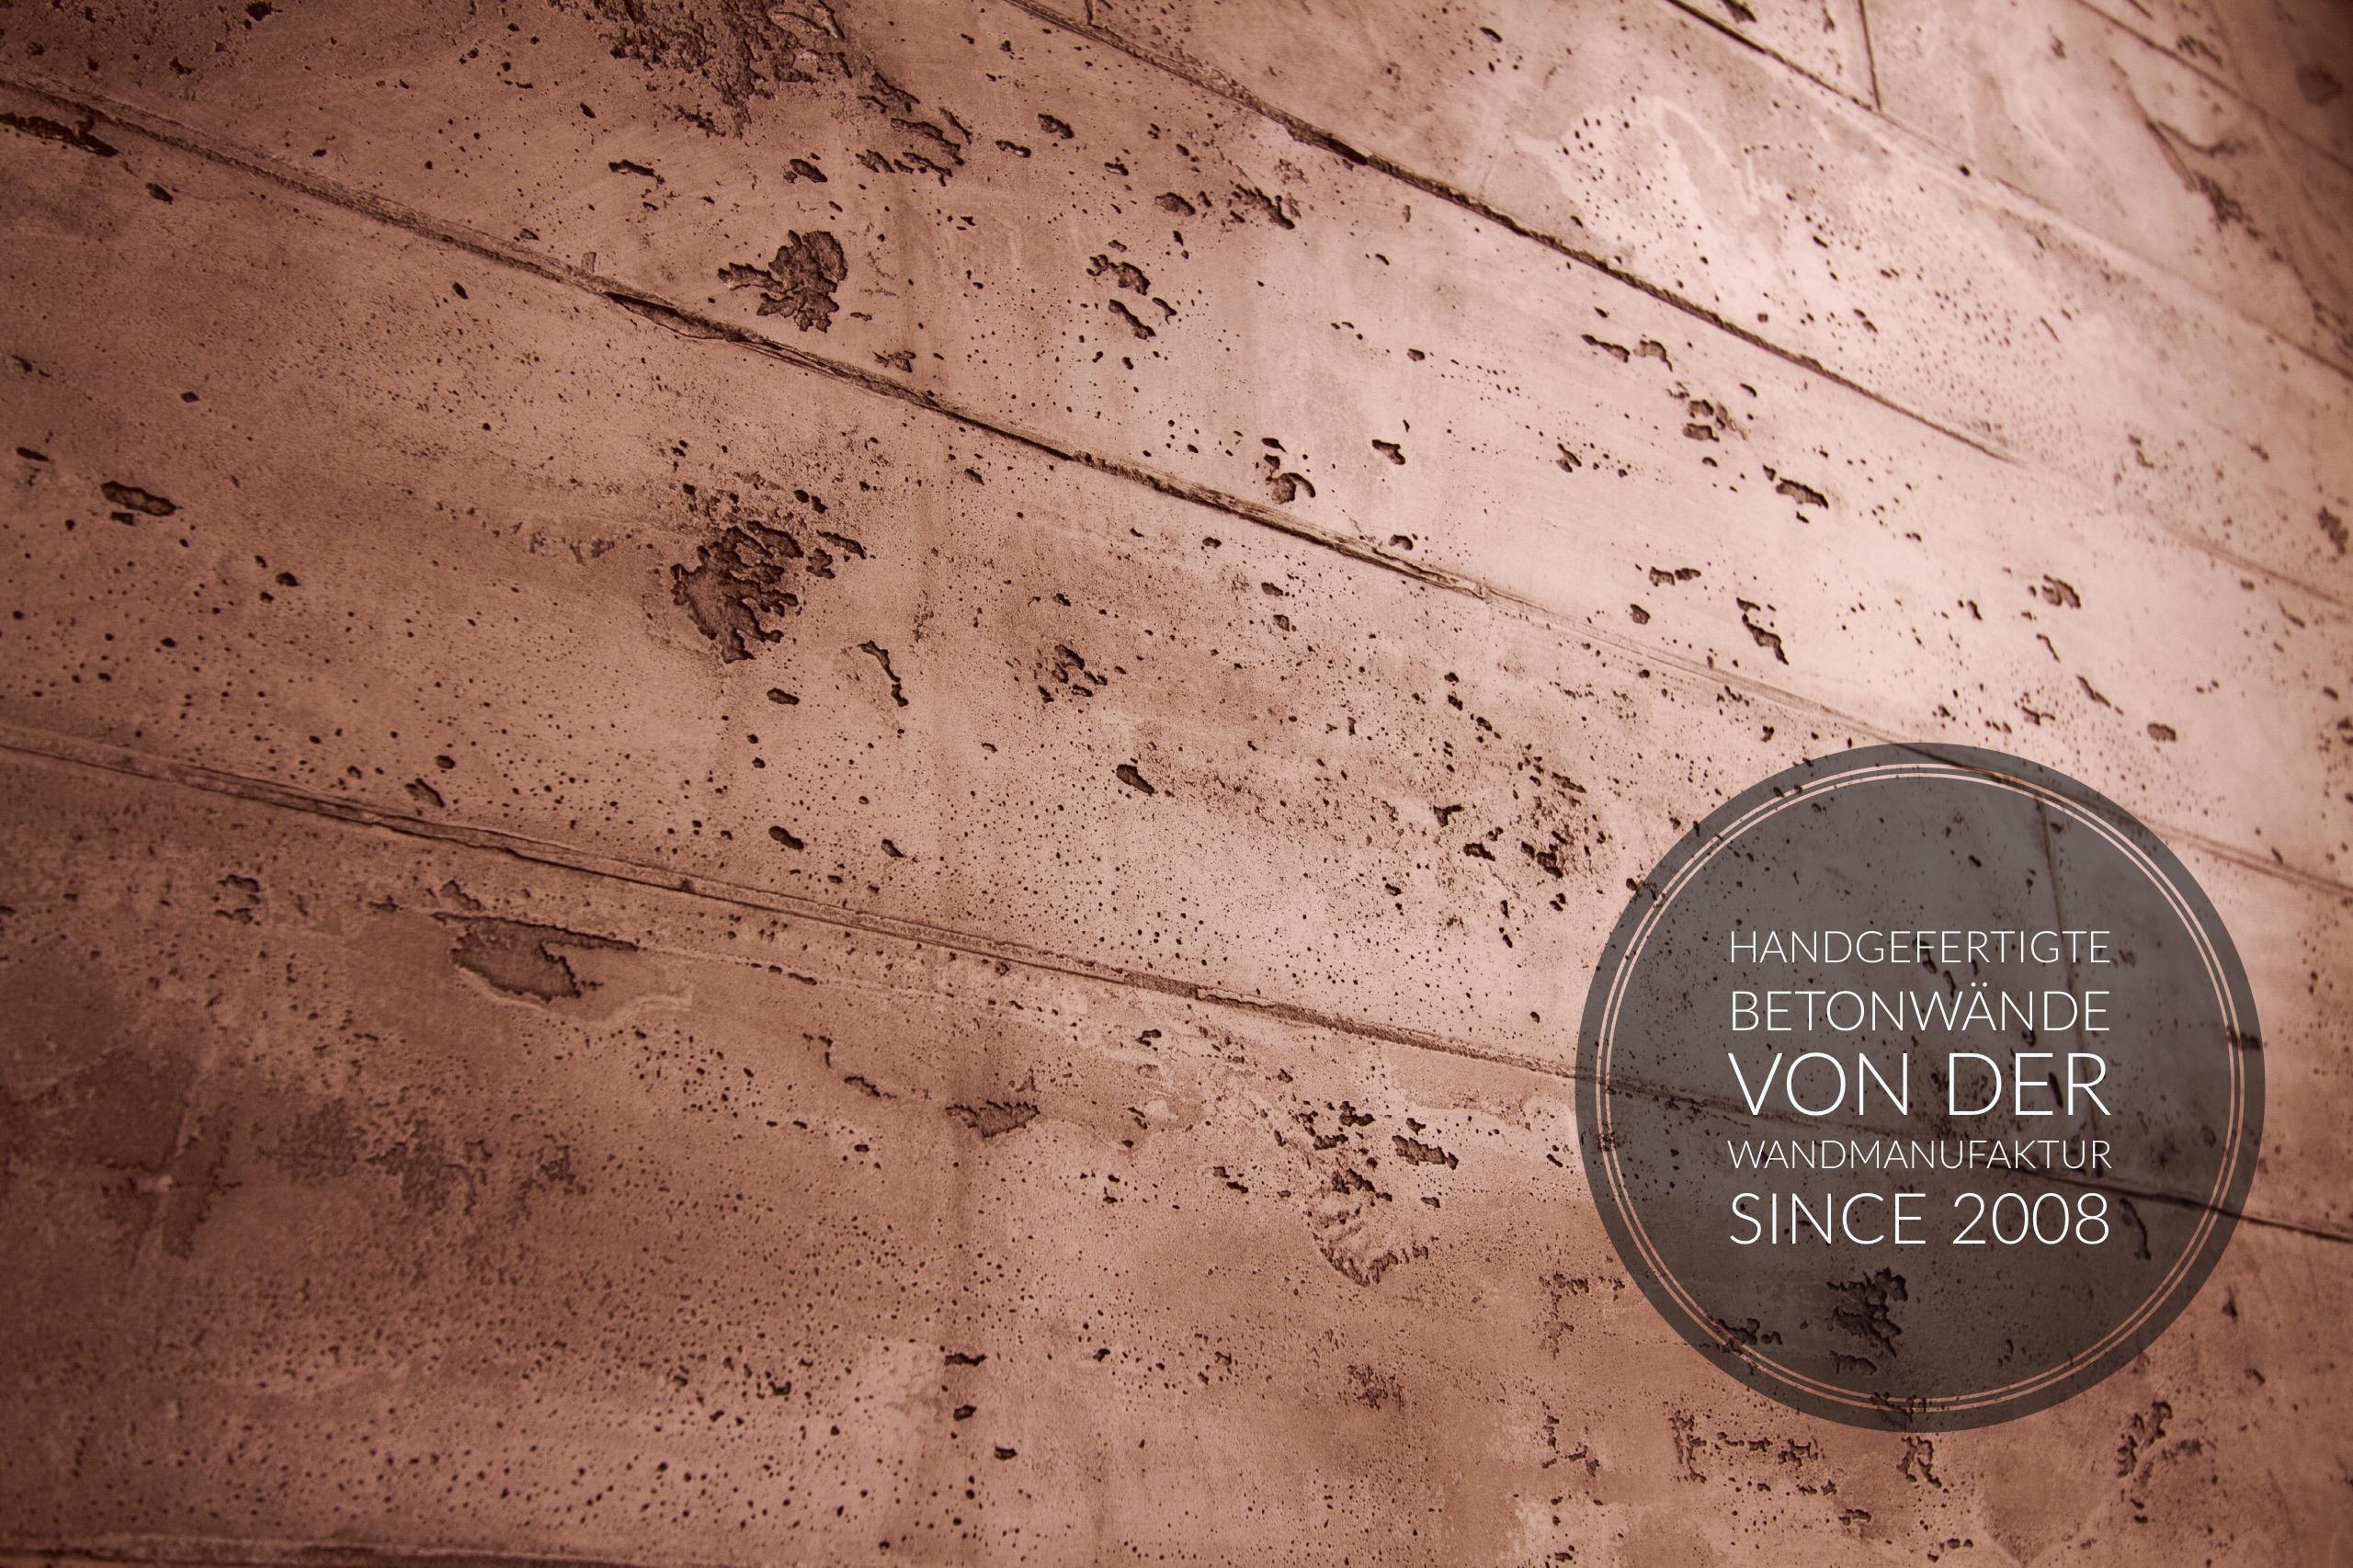 Beton Wandgestaltung #betonwand ©Daniel Jertz / Wandmanufaktur